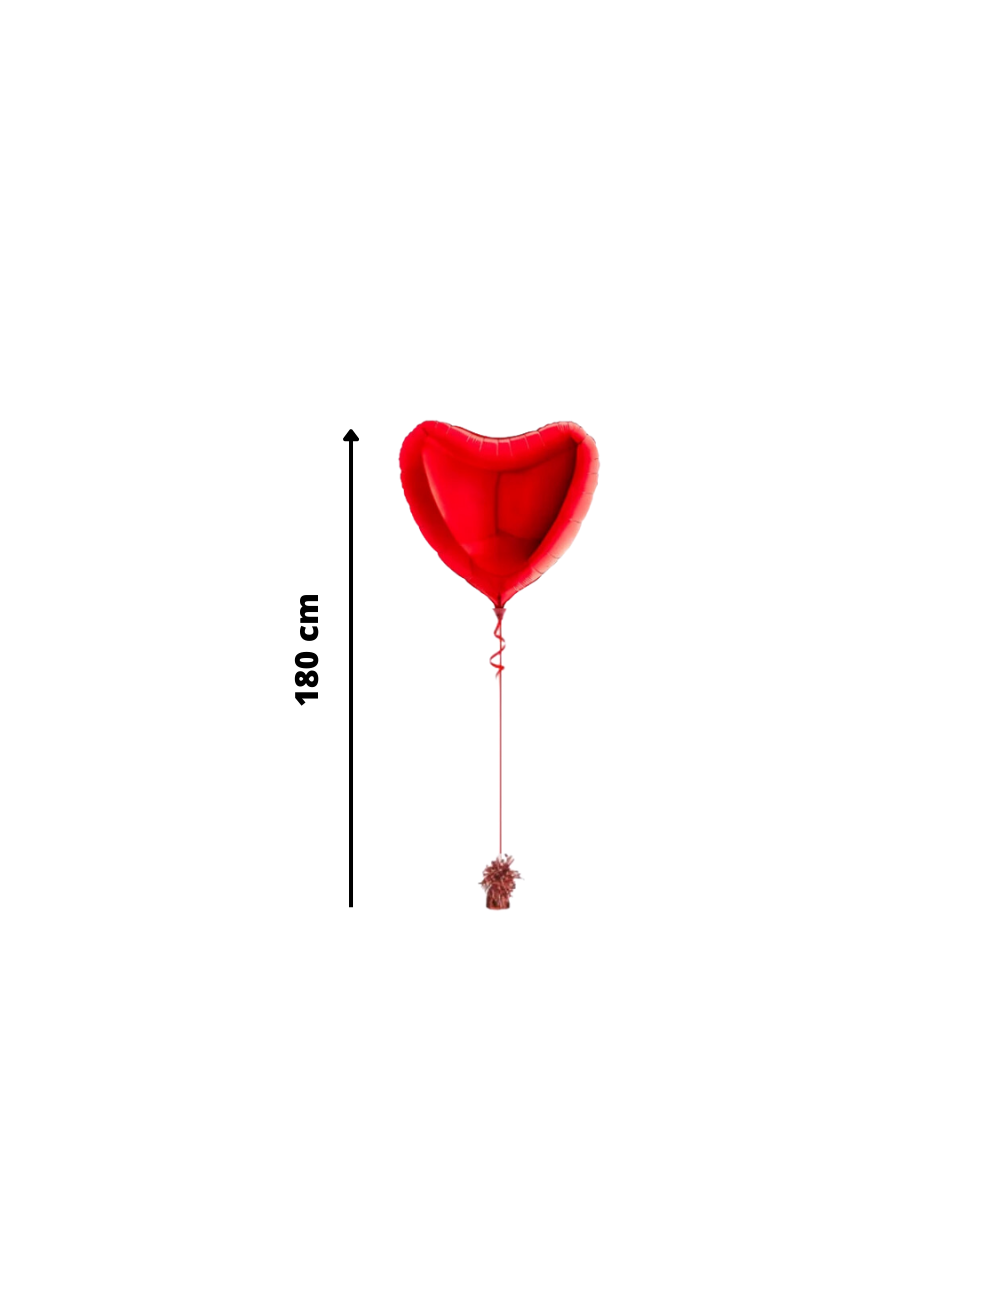 Ballon Cœur rouge gonflé à l'hélium